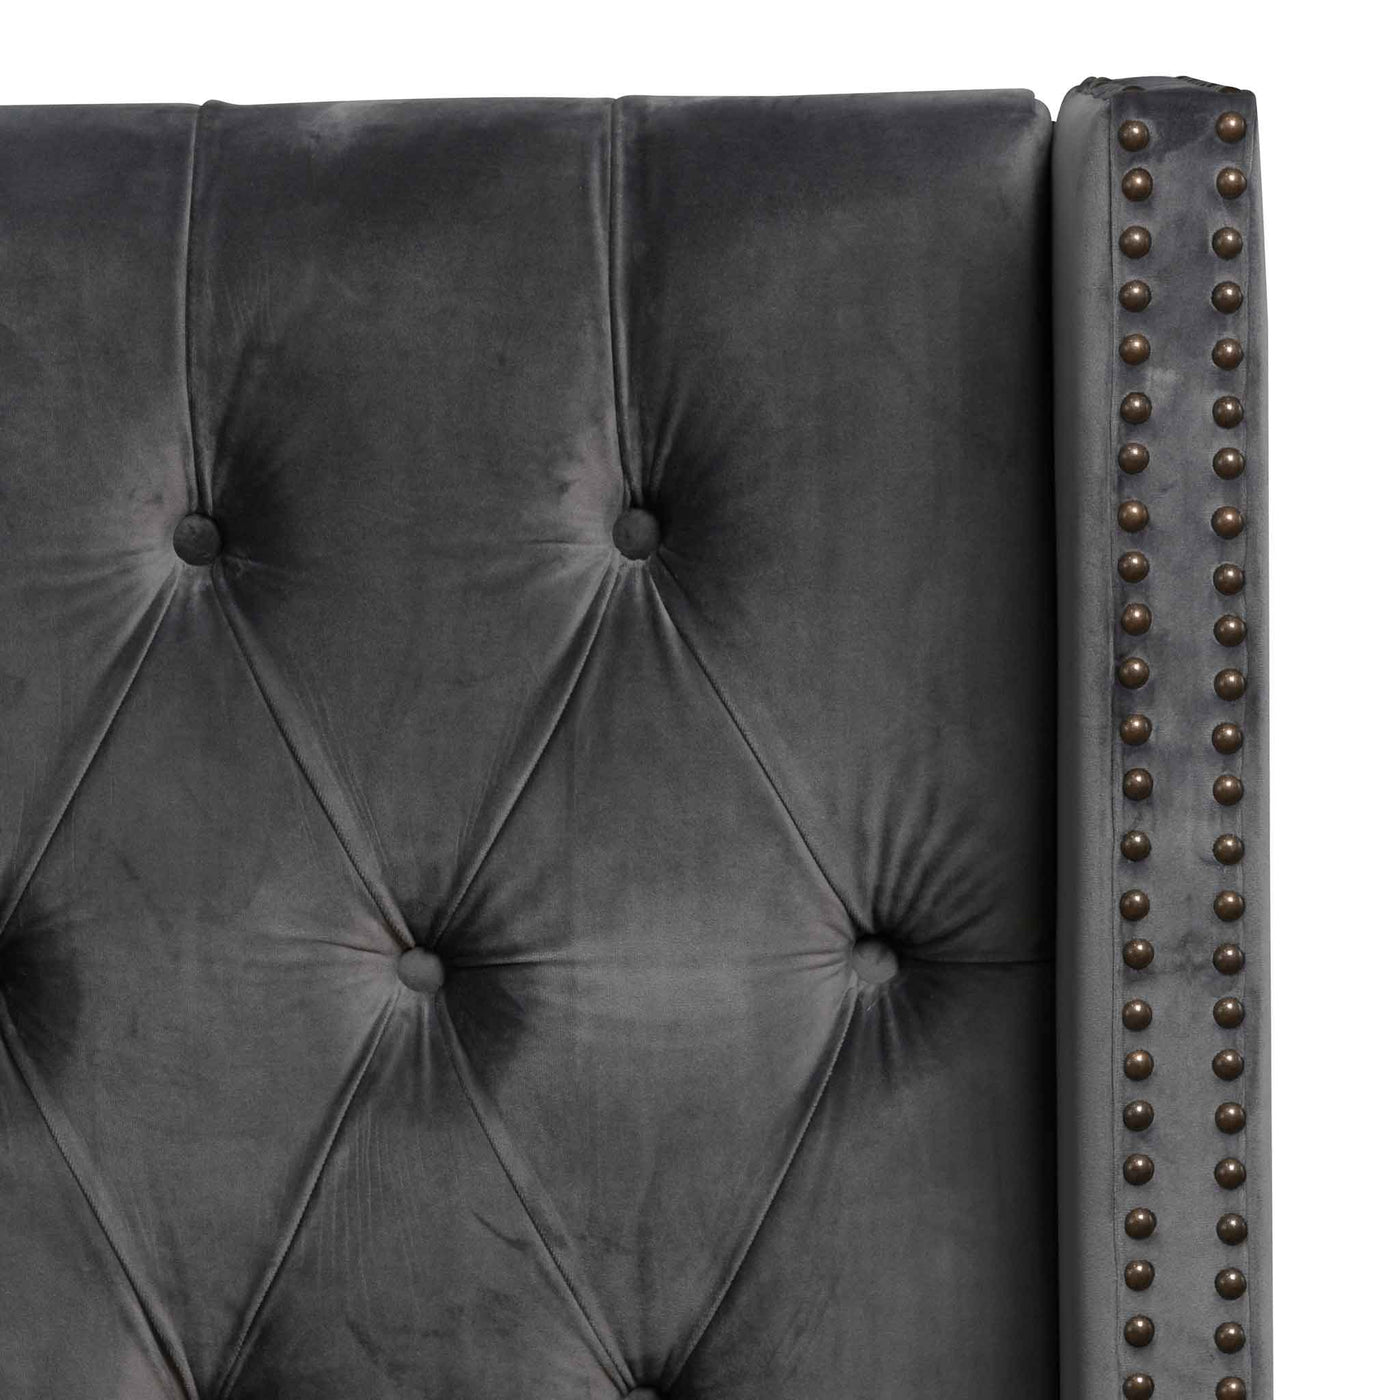 Queen Sized Bed Frame - Charcoal Velvet